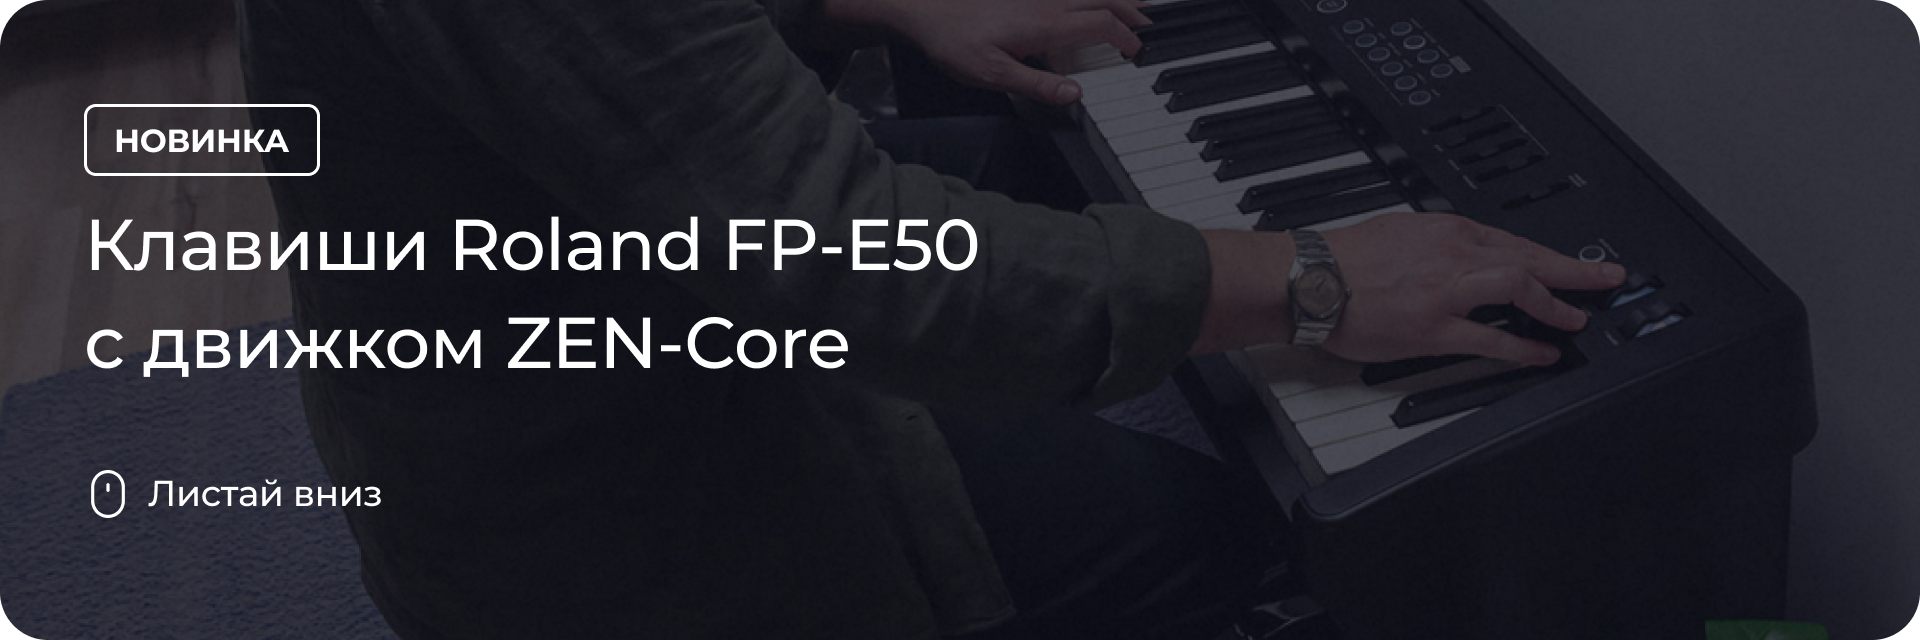 Клавиши Roland FP-E50 с движком ZEN-Core